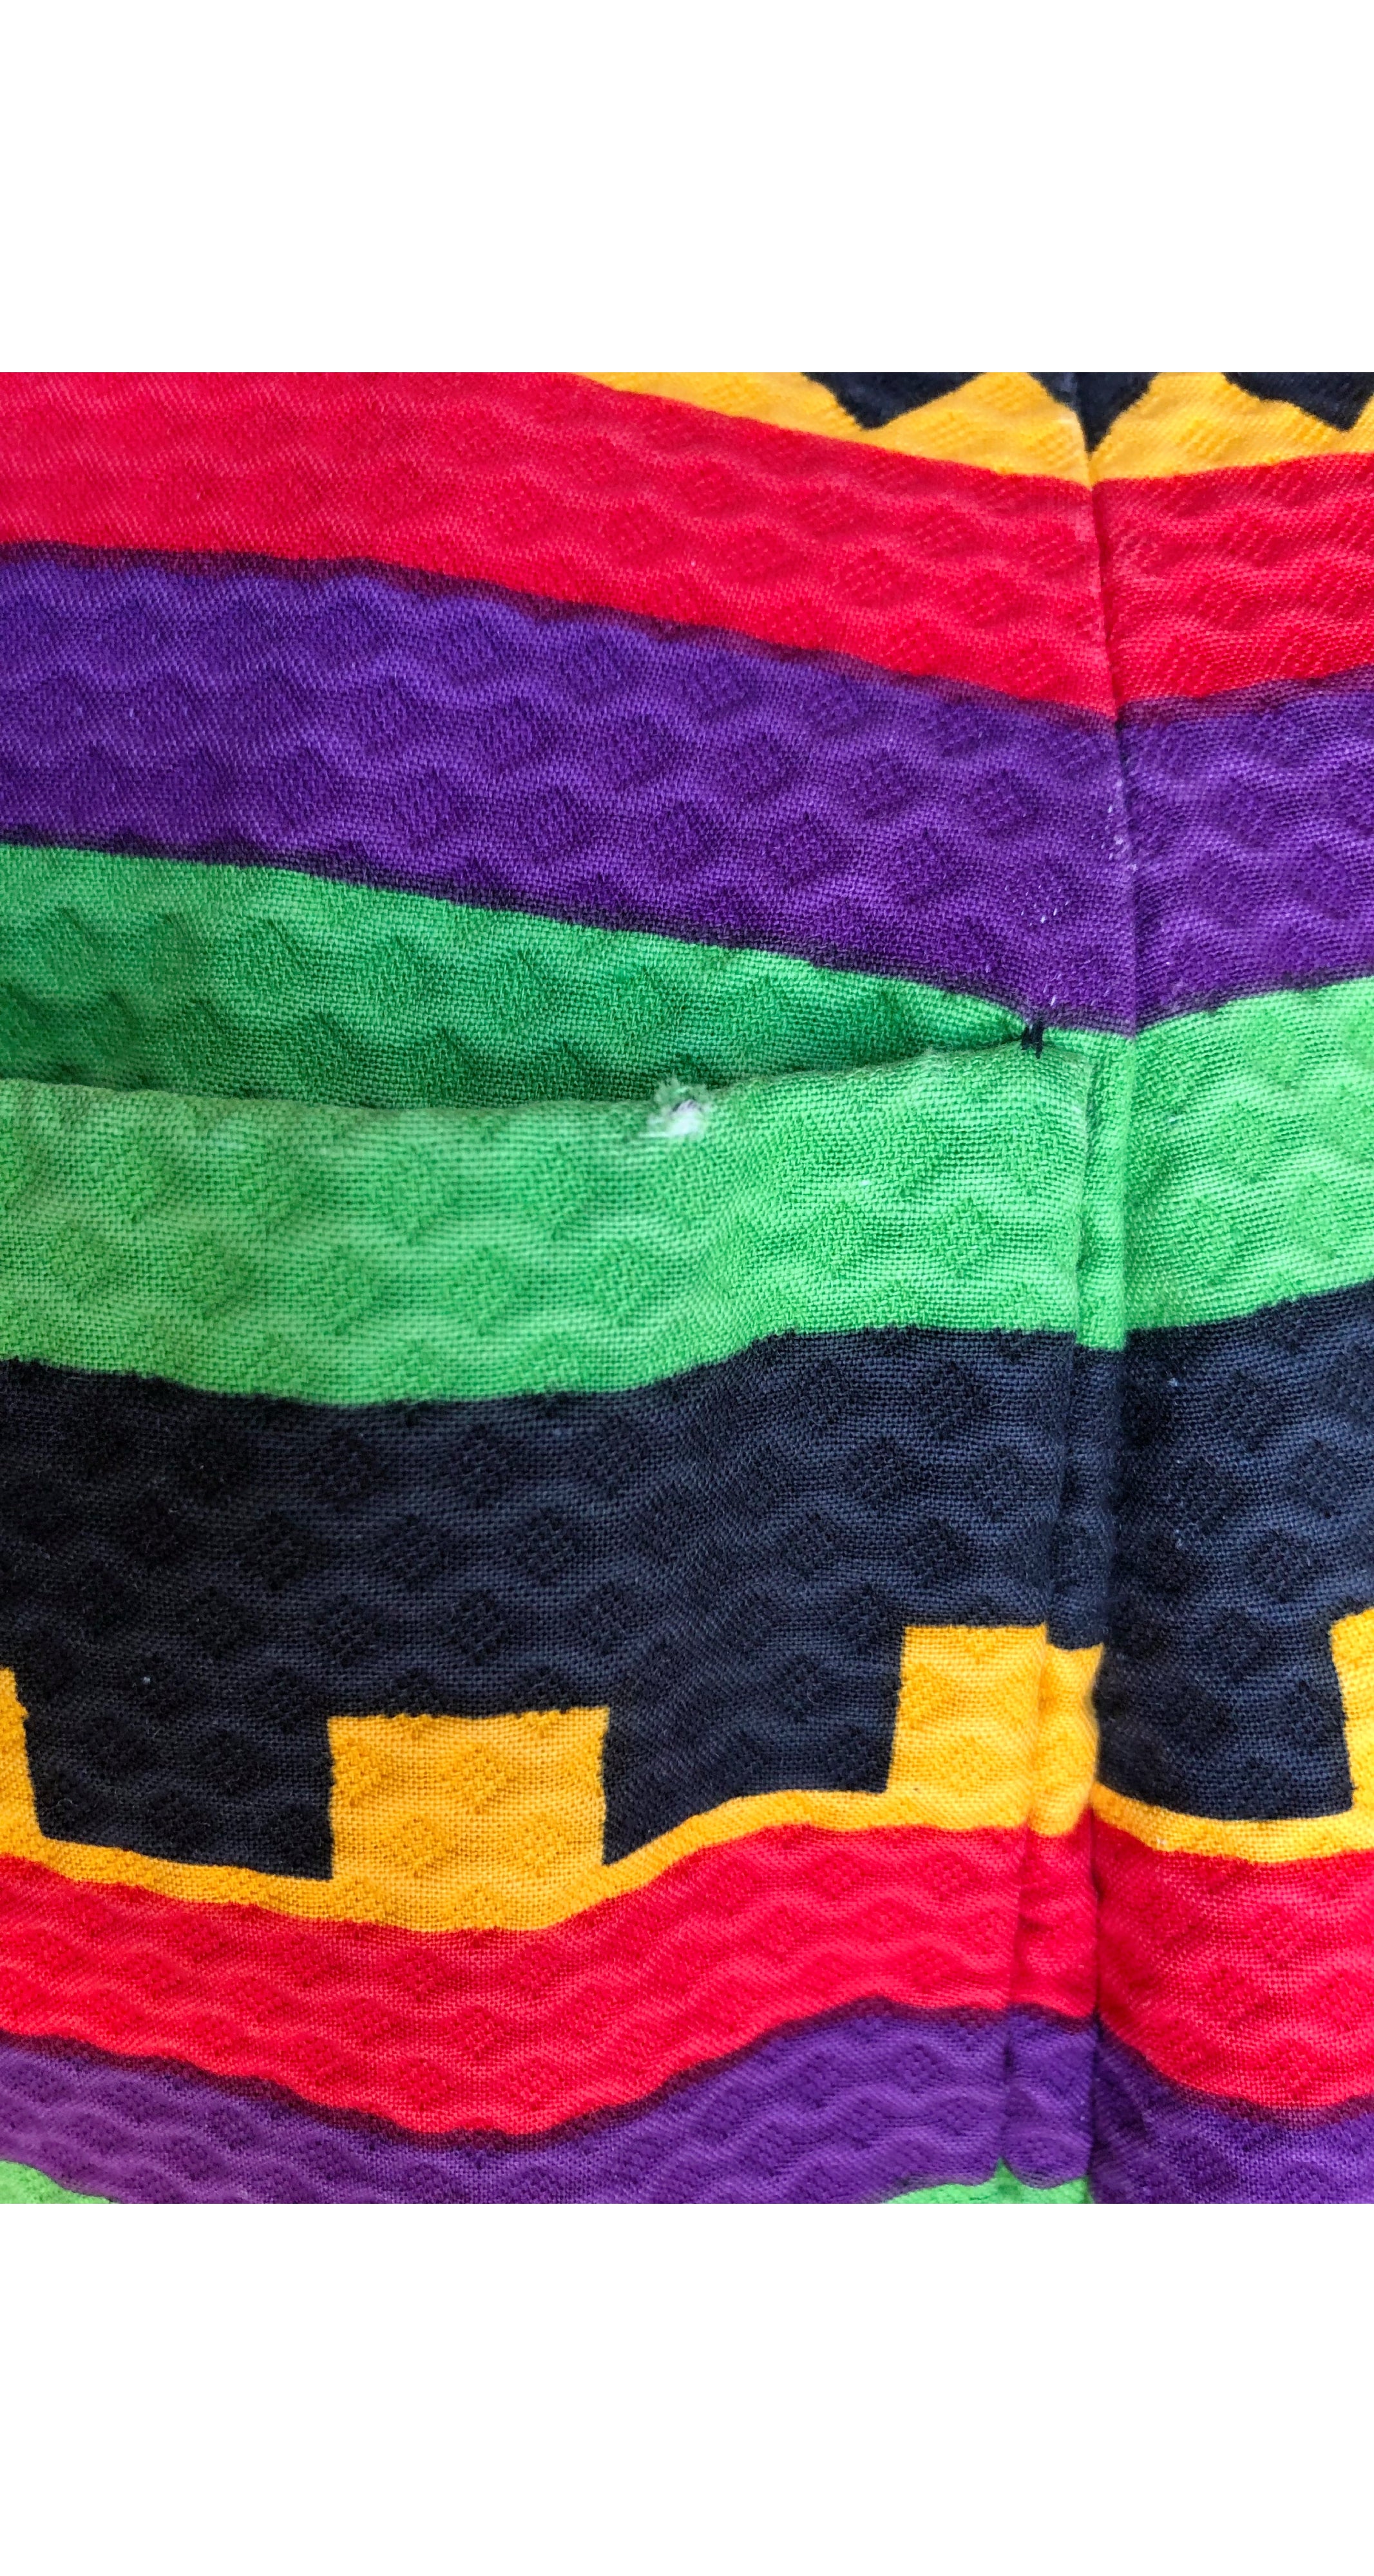 1970s Geometric Print Pique Cotton Collared Coat